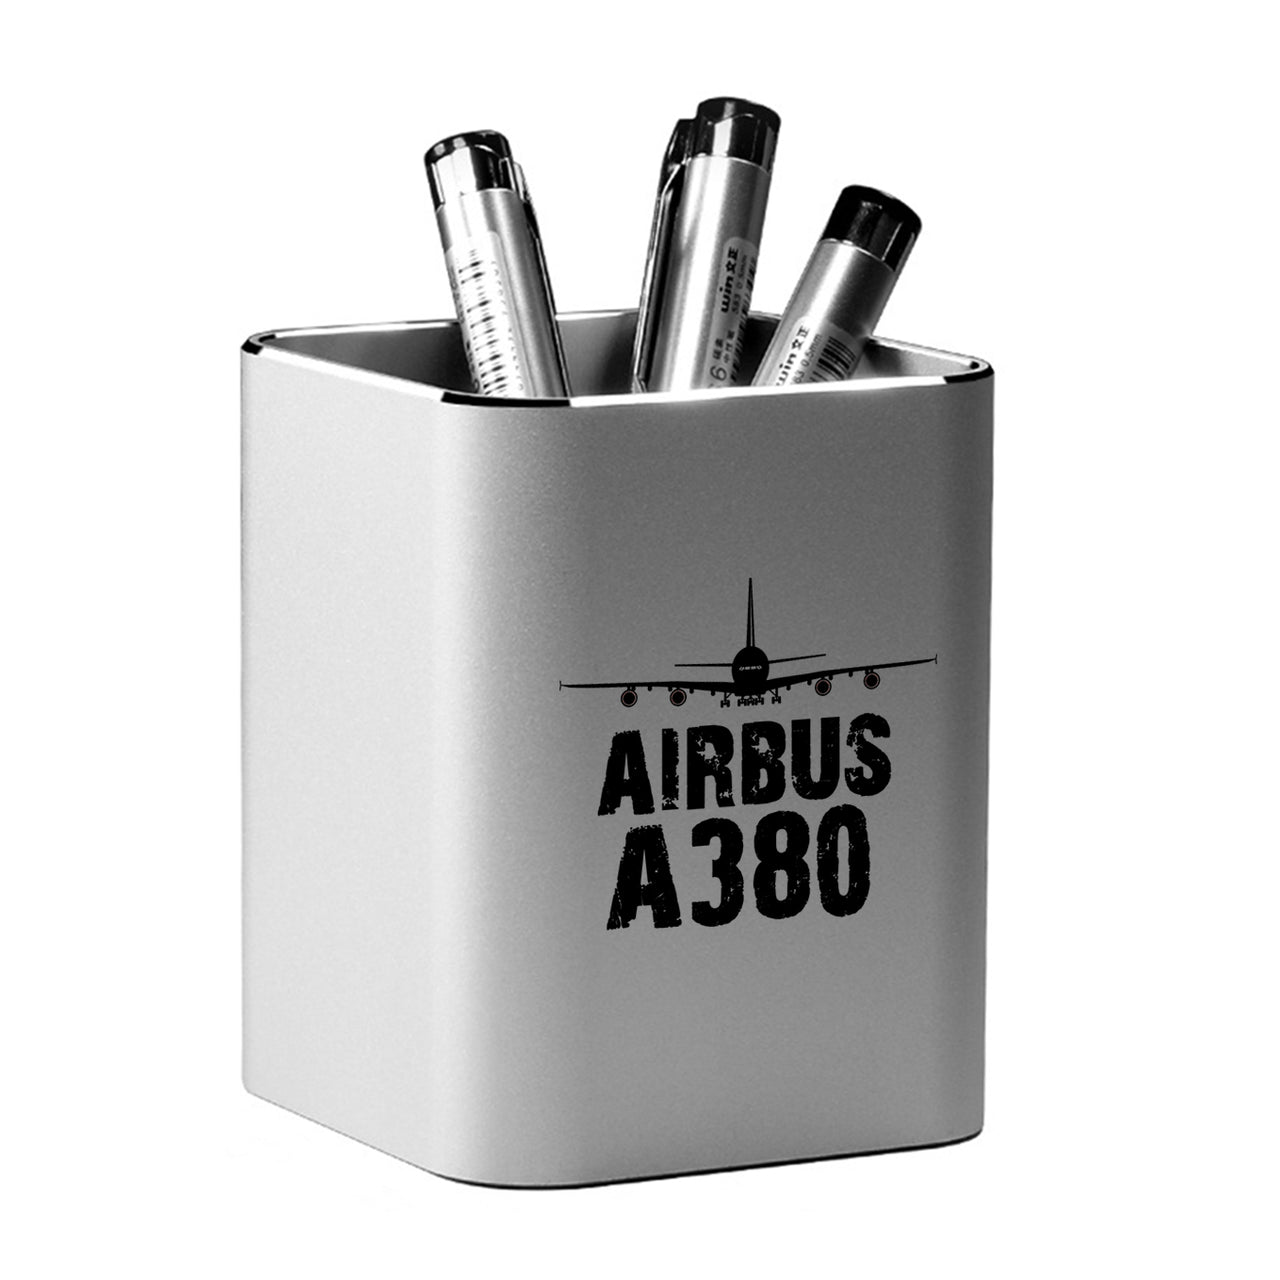 Airbus A380 & Plane Designed Aluminium Alloy Pen Holders